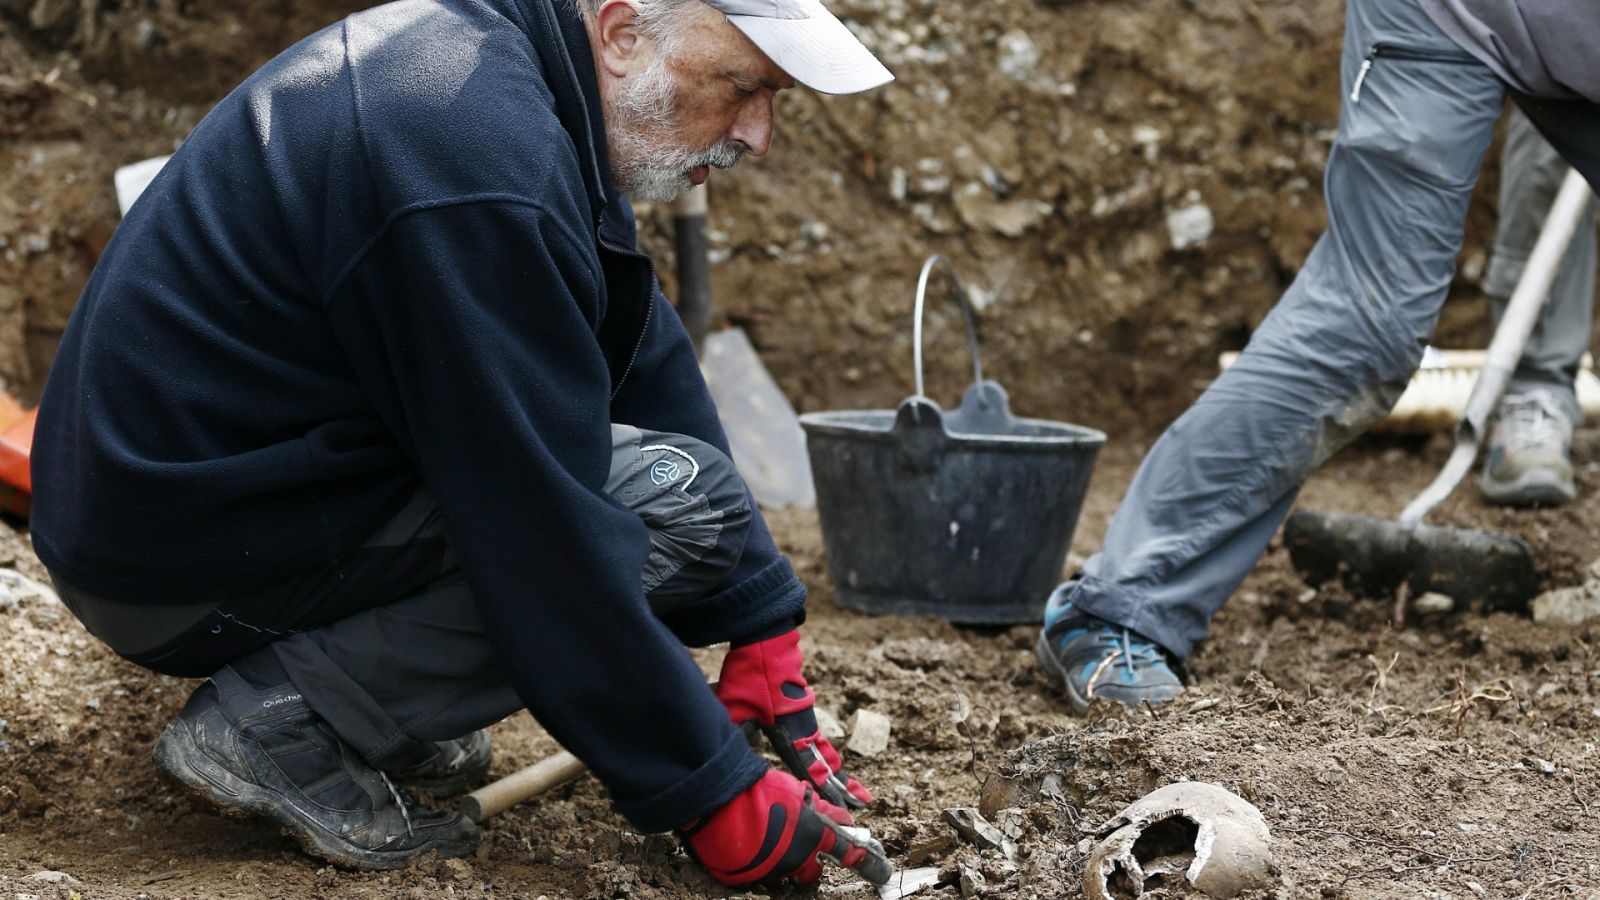 El antropólogo forense Francisco Etxeberría calcula que quedan unas 20.000 personas del bando republicano por exhumar